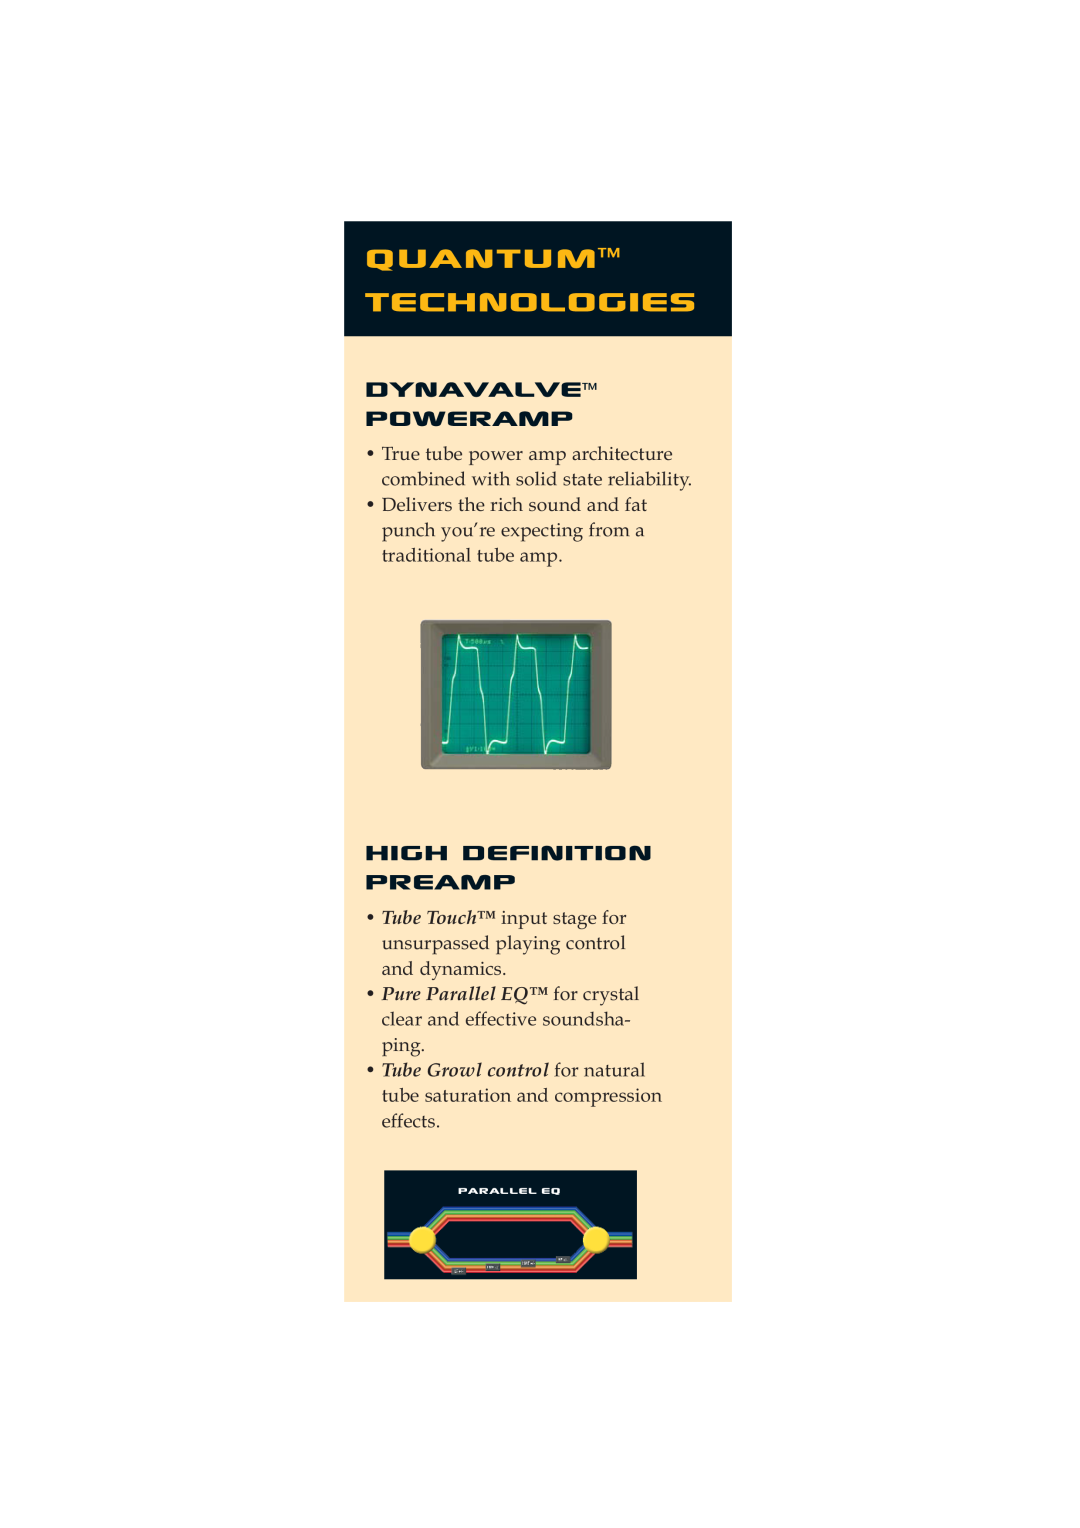 Quantum Audio Speaker manual Quantum technologies, DynavalveTM Poweramp, High Definition Preamp 